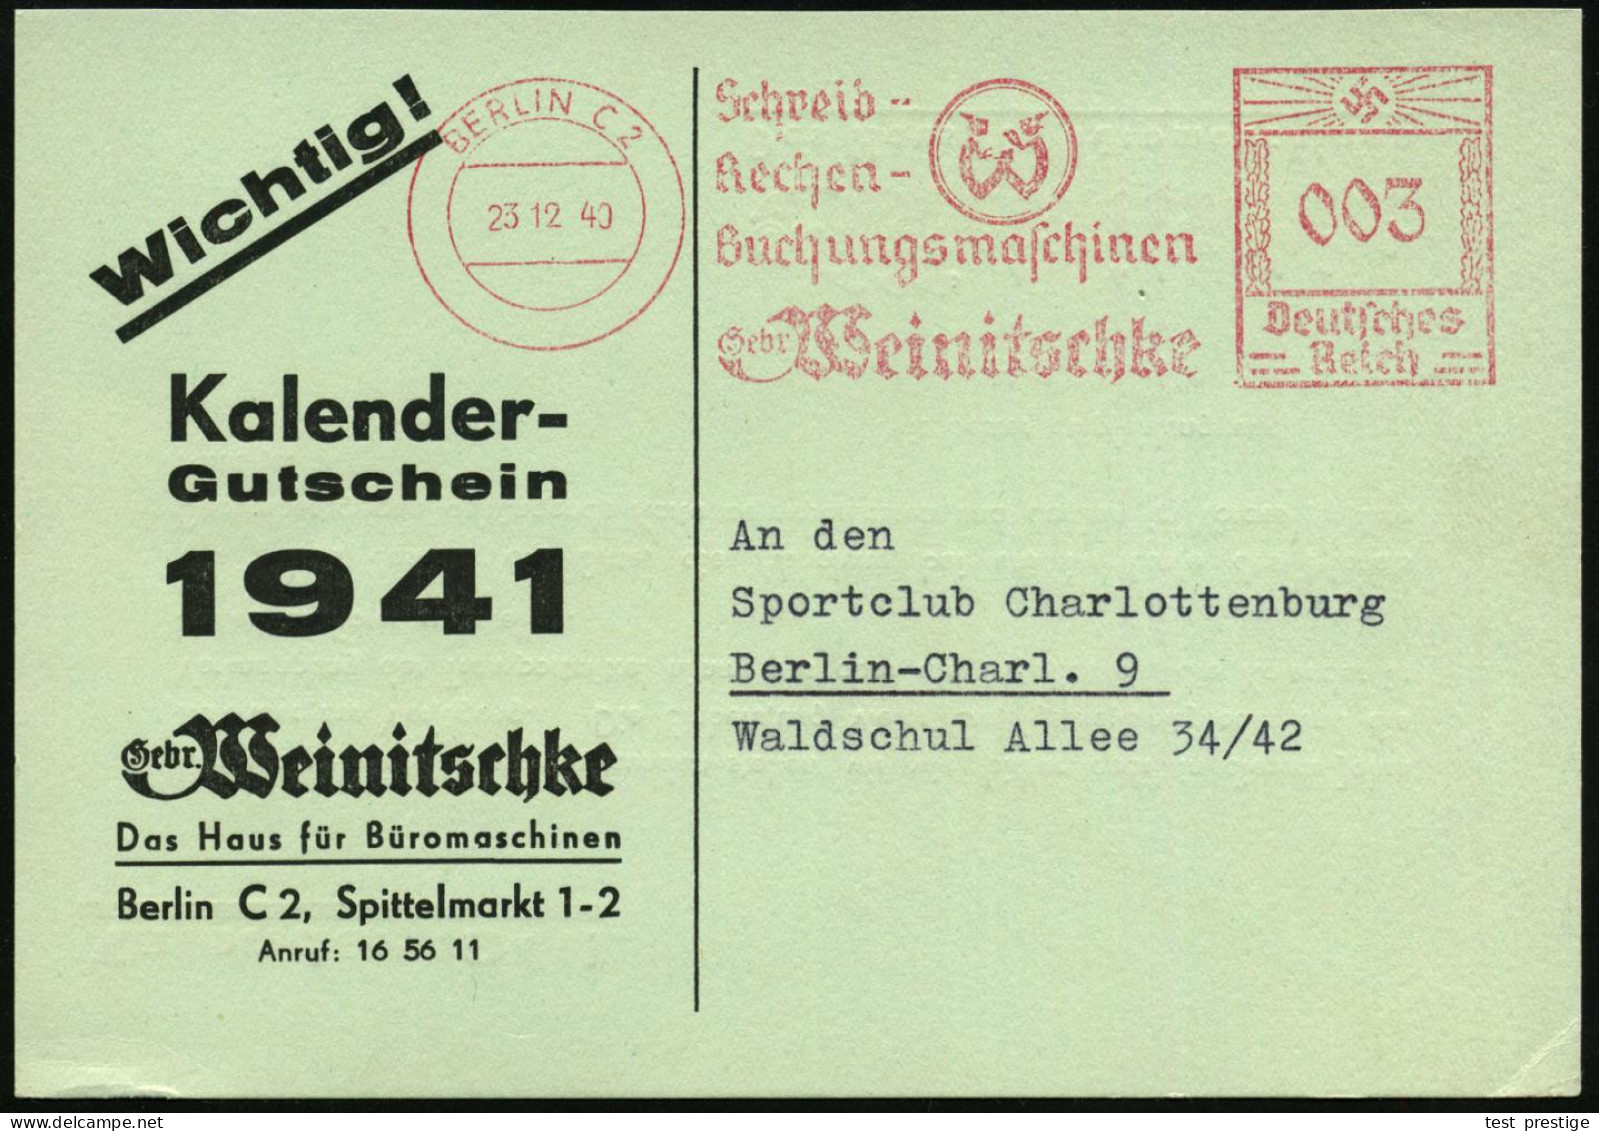 BERLIN C2/ Schreib-/ Rechen-/ Buchungsmaschinen/ Gebr.Weinitschke 1940 (23.12.) AFS Francotyp (Logo) Auf Reklame-Kt. Bet - Informatik